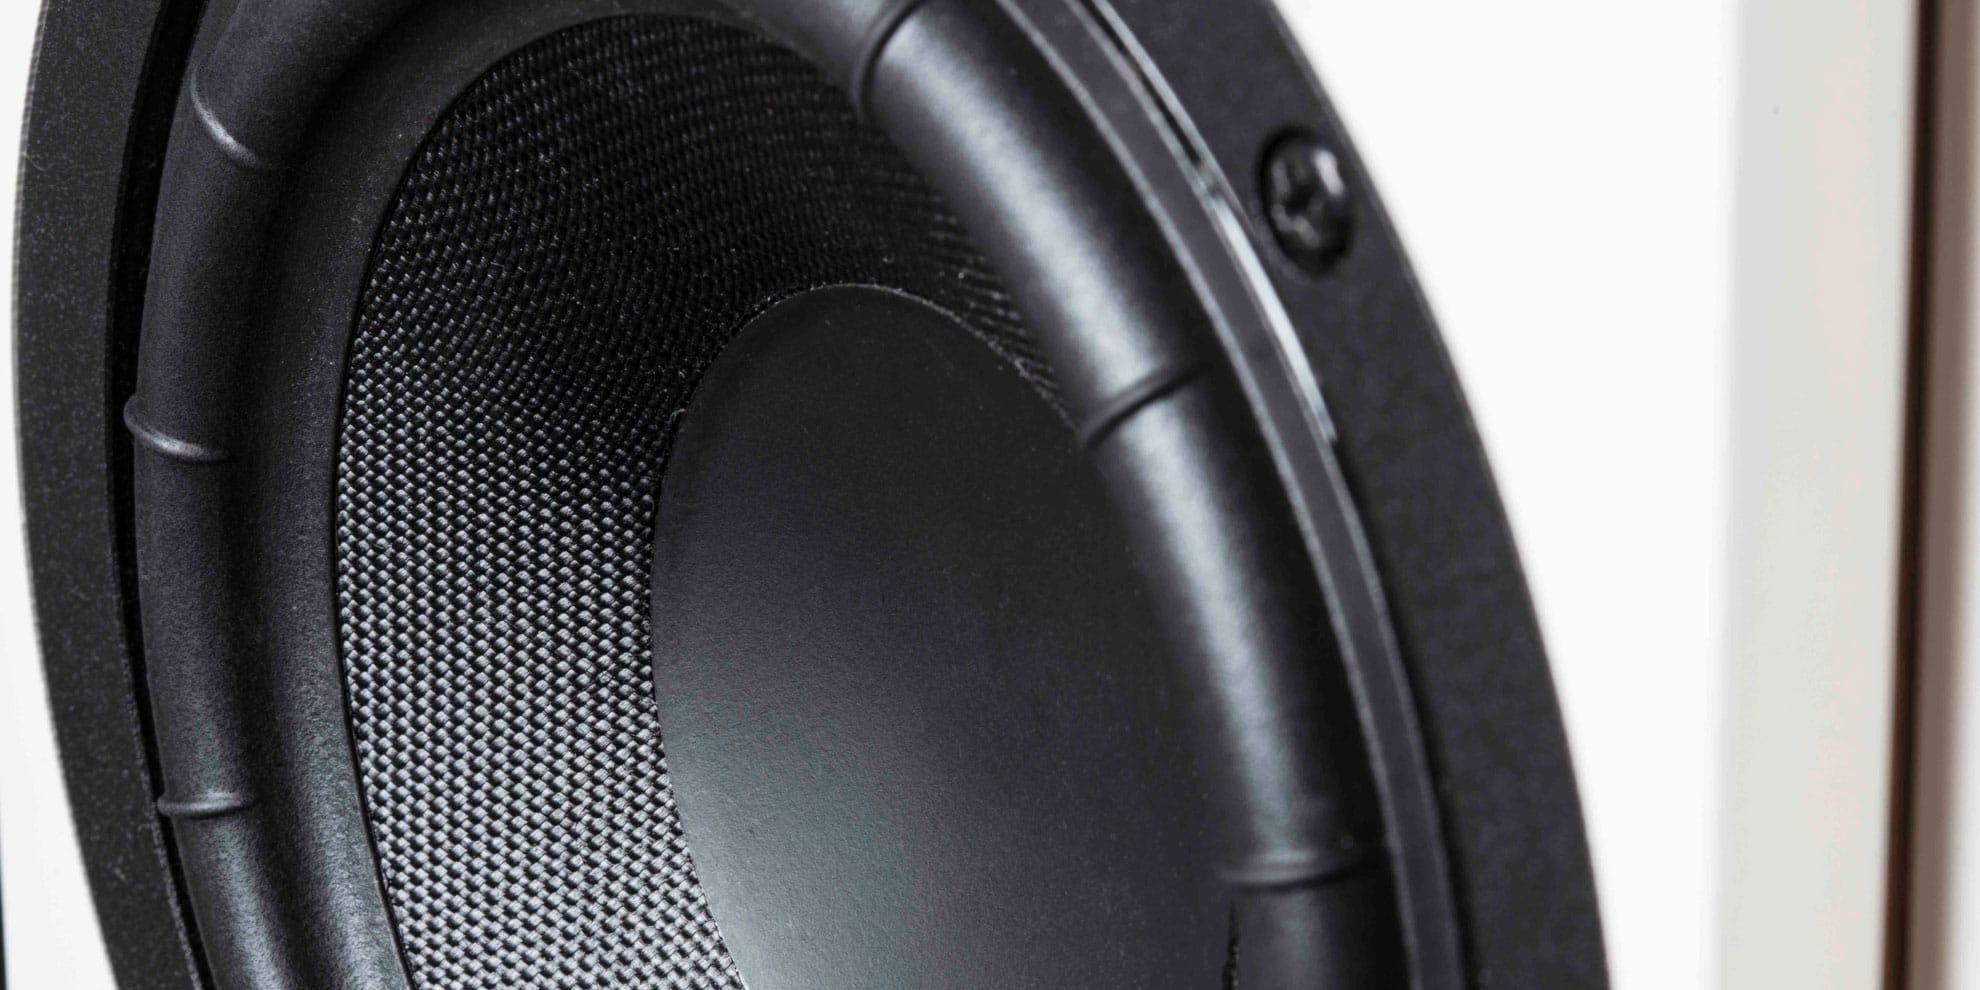 System Audio Legend 5 Silverback Trådløs høyttaler